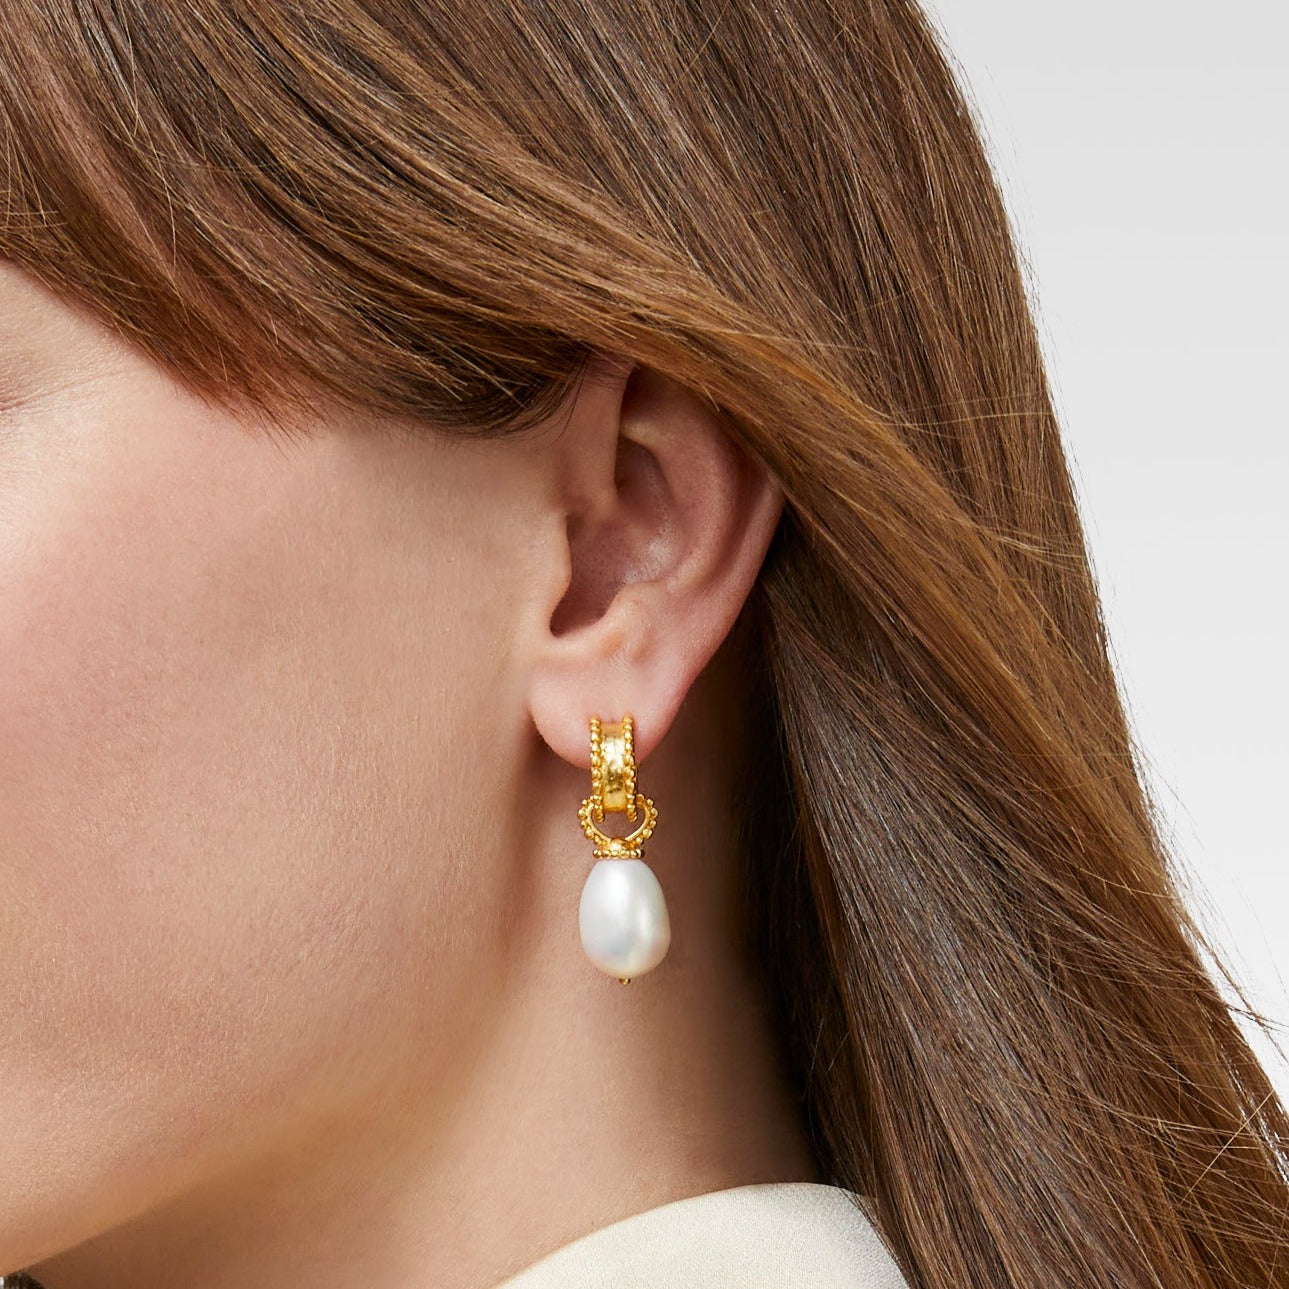 Victoria Hoop Earrings - Stainless Steel – Pearls And Rocks